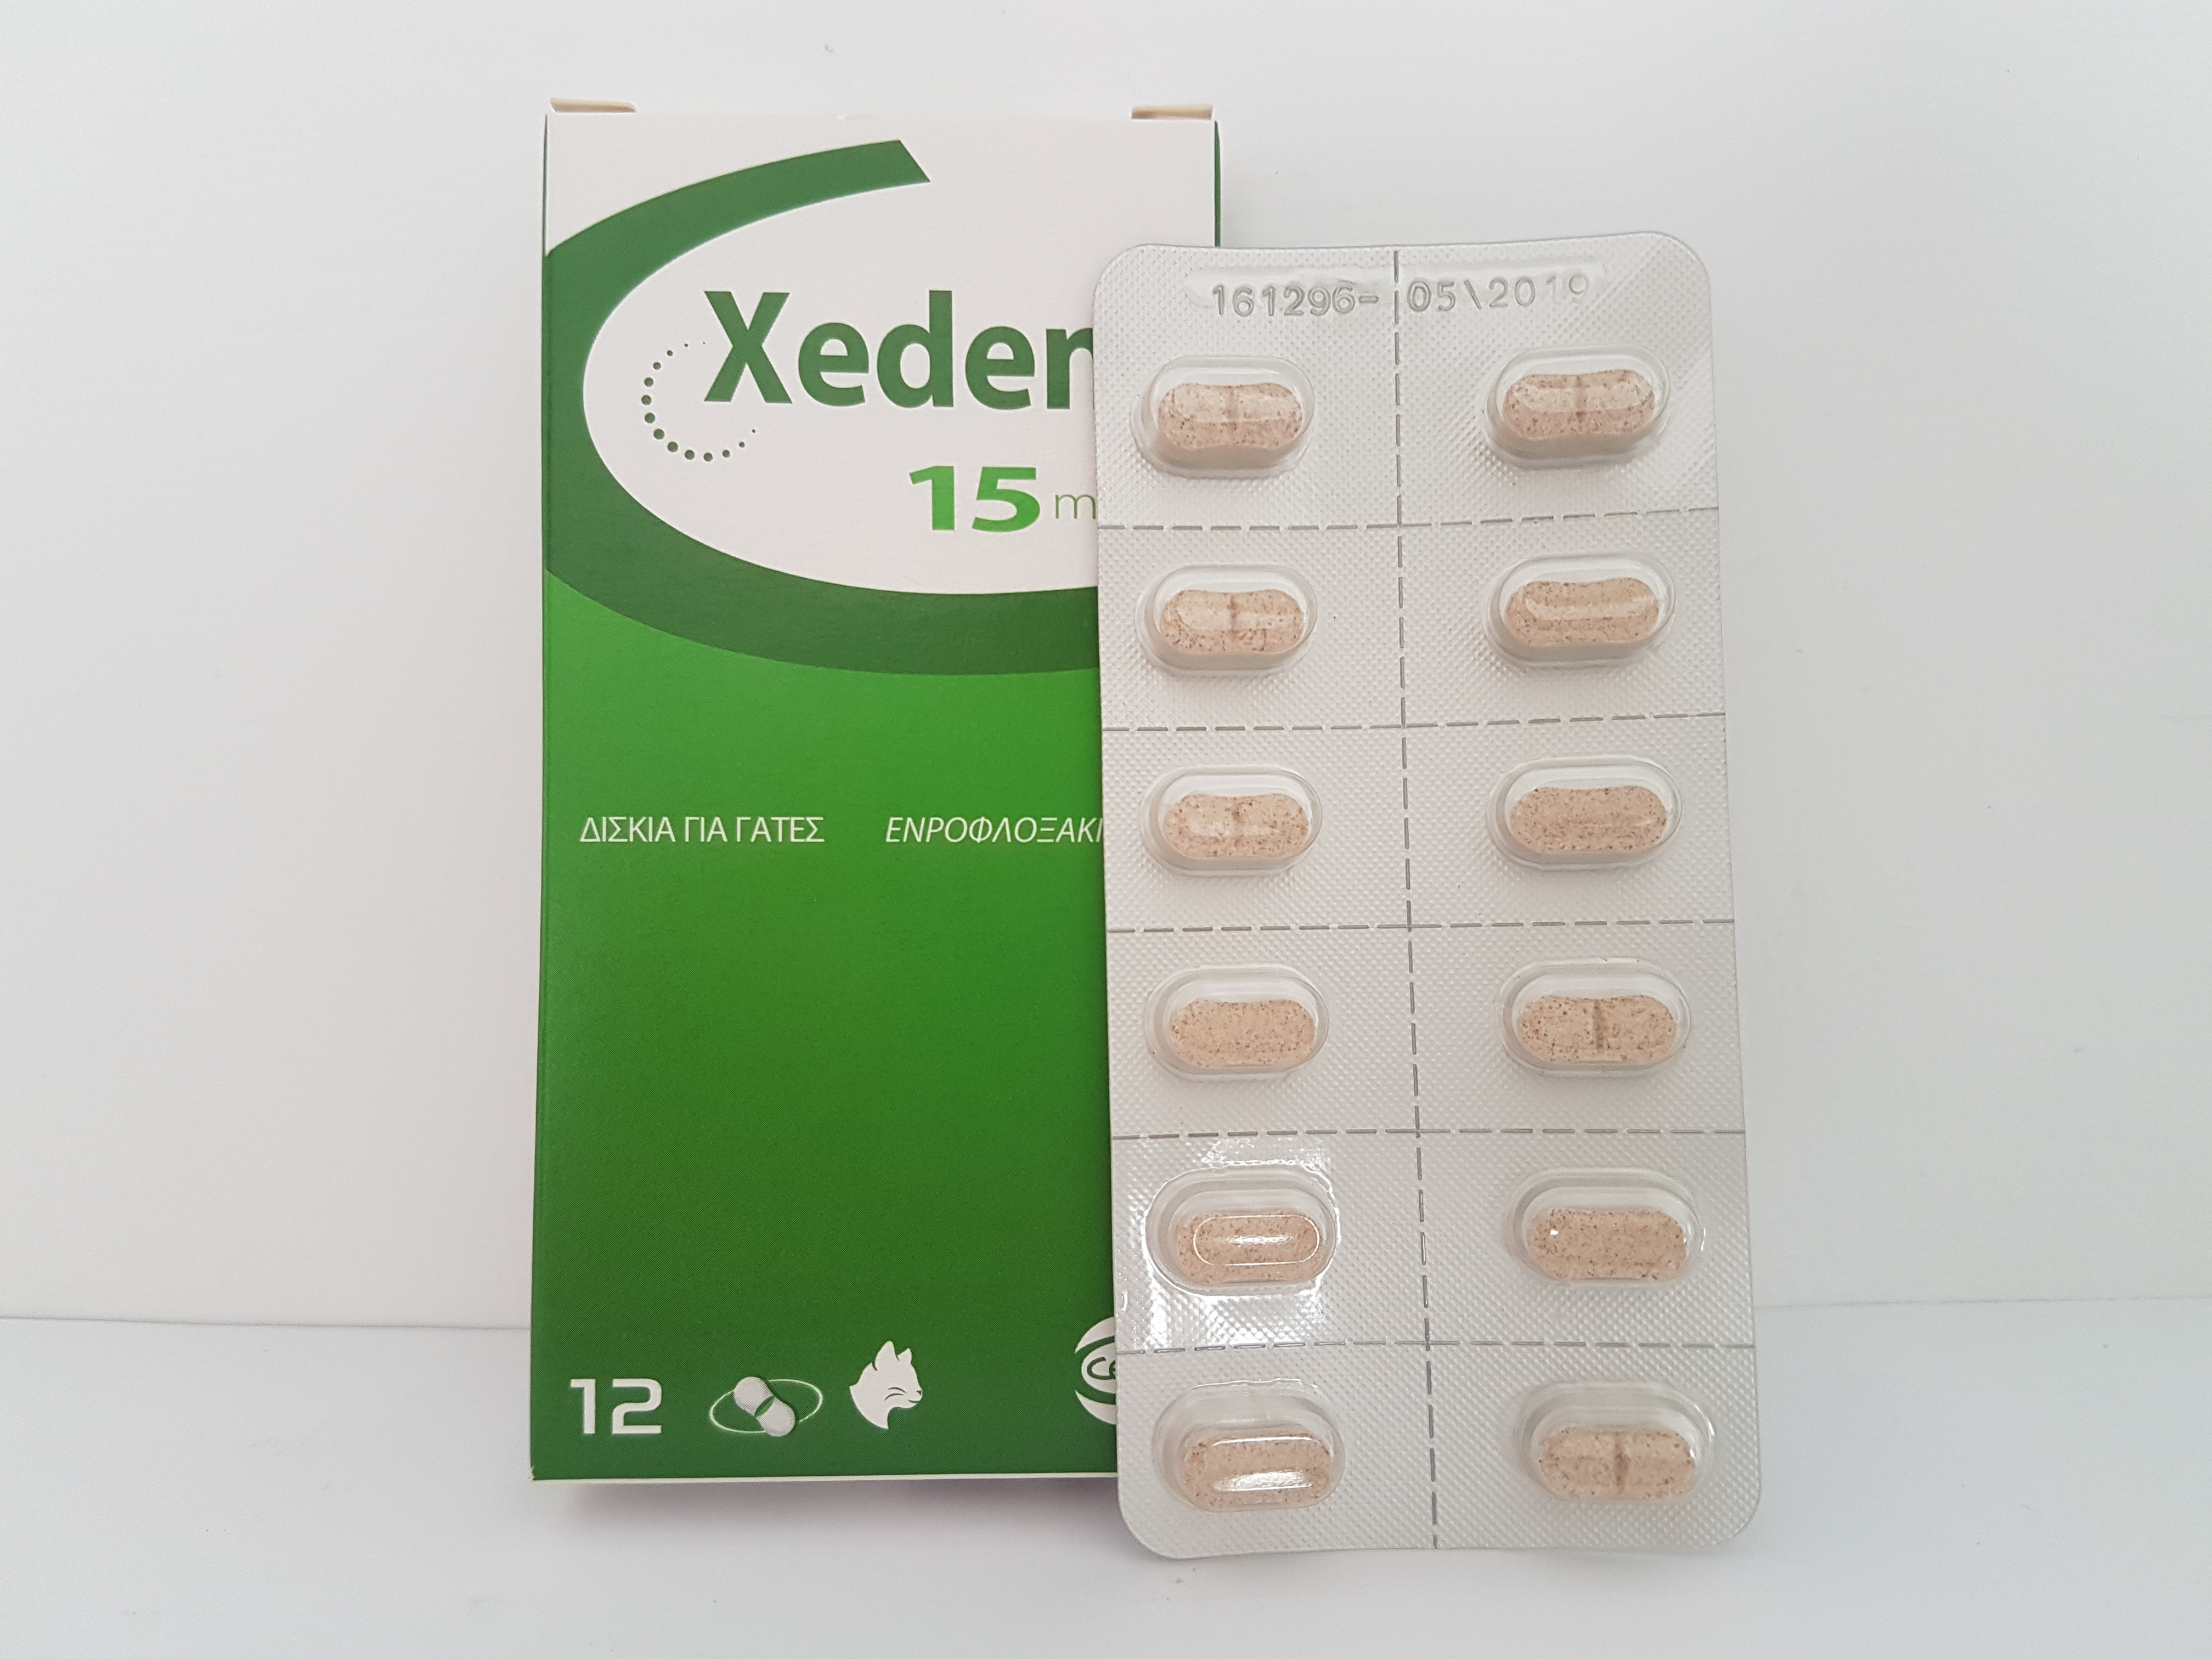 Xeden 15 mg, 12 tabs